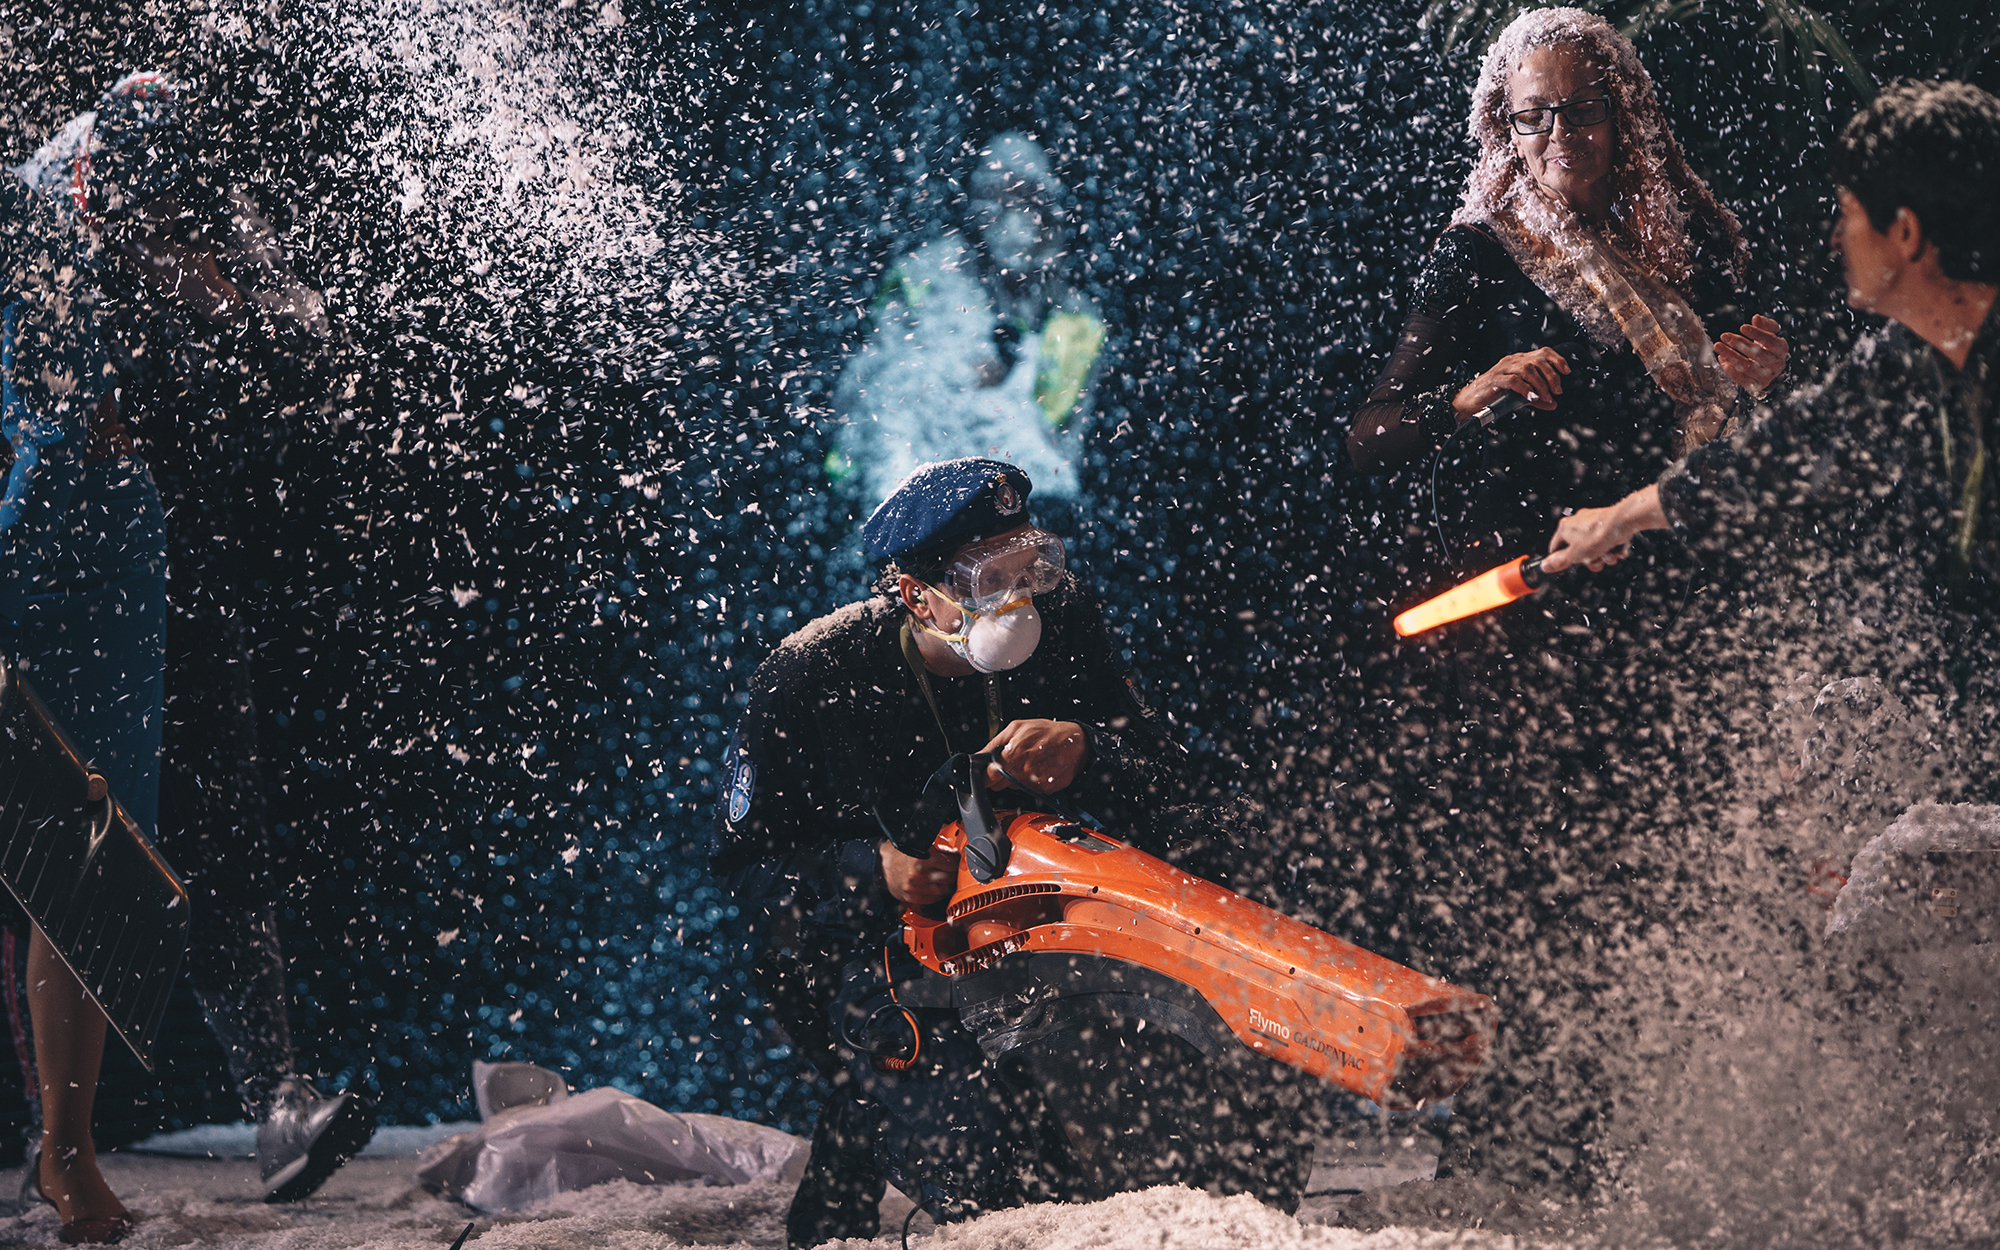 Blue (Jurij Drevenšek) s prozornimi zaščitnimi očali in zaščitno masko na obrazu usmerja pihalnik v kup snega, da se snežinke dvigujejo v zrak. Na desni strani odra stoji Clara (Jožica Avbelj) z mikrofonom v roki, ob njej Rozita (Ana Dolinar Horvat) s sig